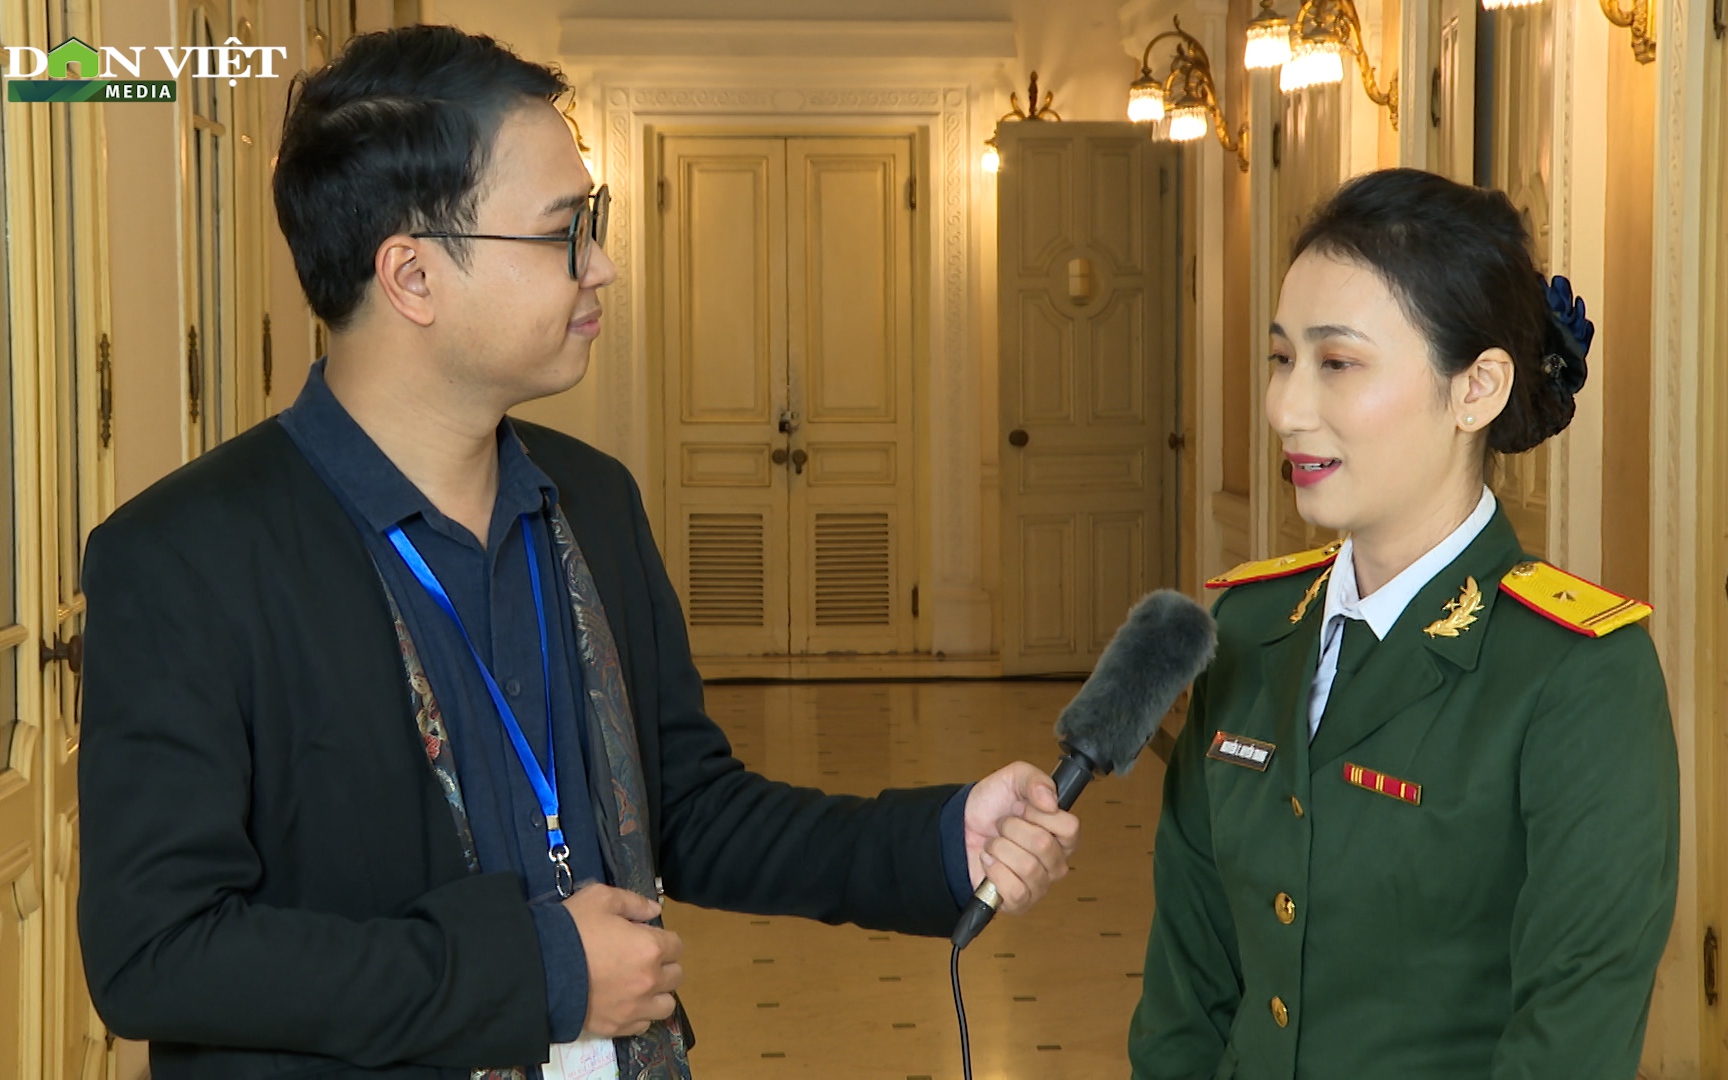 Thiếu tá Nguyễn Thị Huyền Trang: Kỷ niệm đáng nhớ từ 